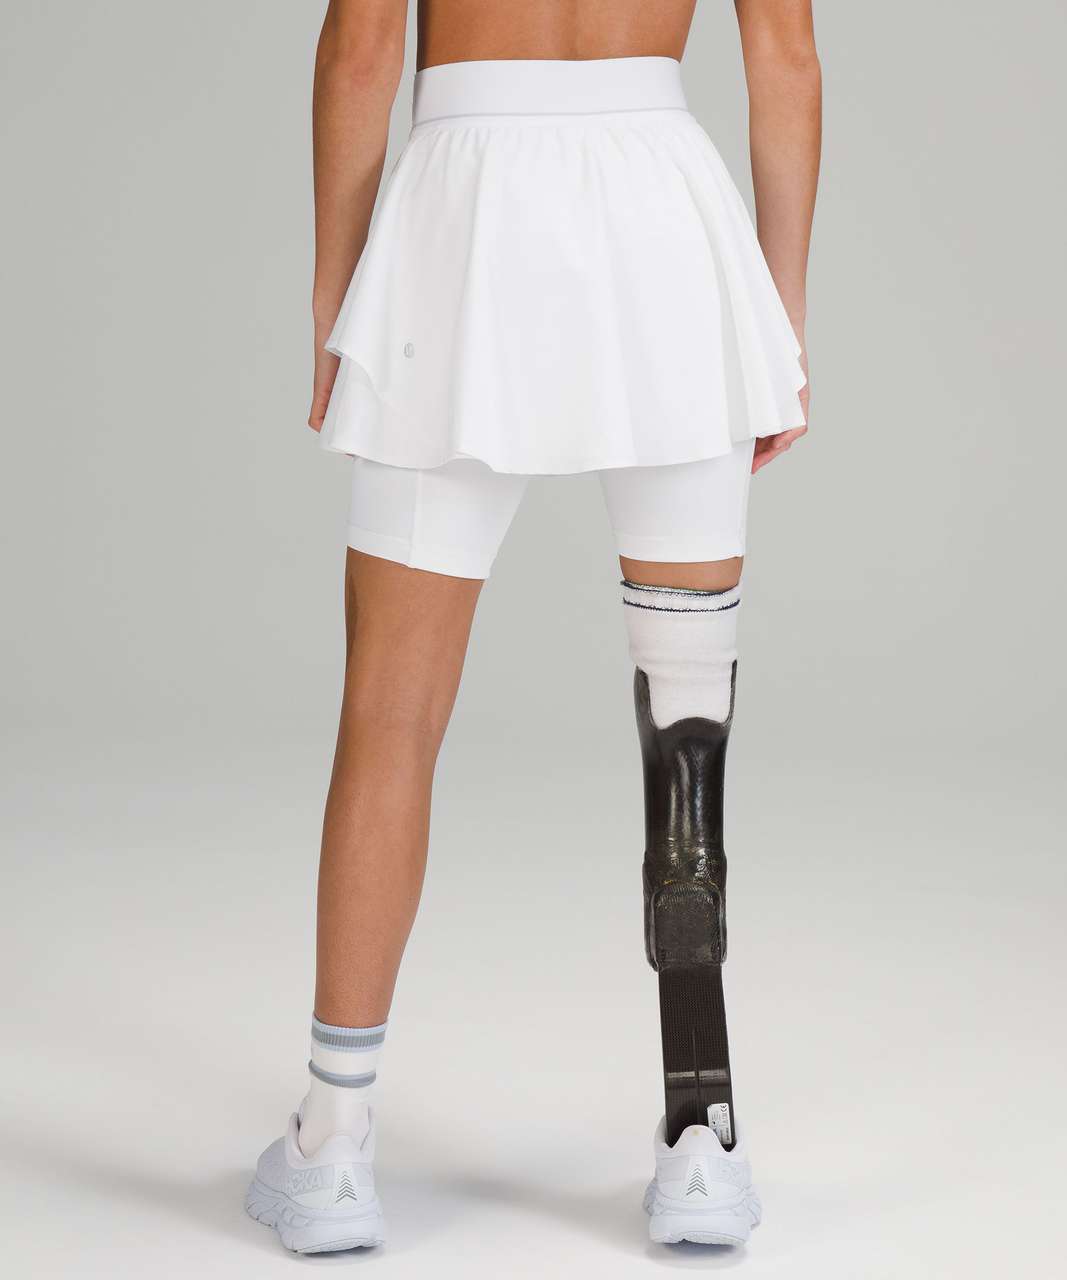 Lululemon Court Rival High-Rise Tennis Skirt - White